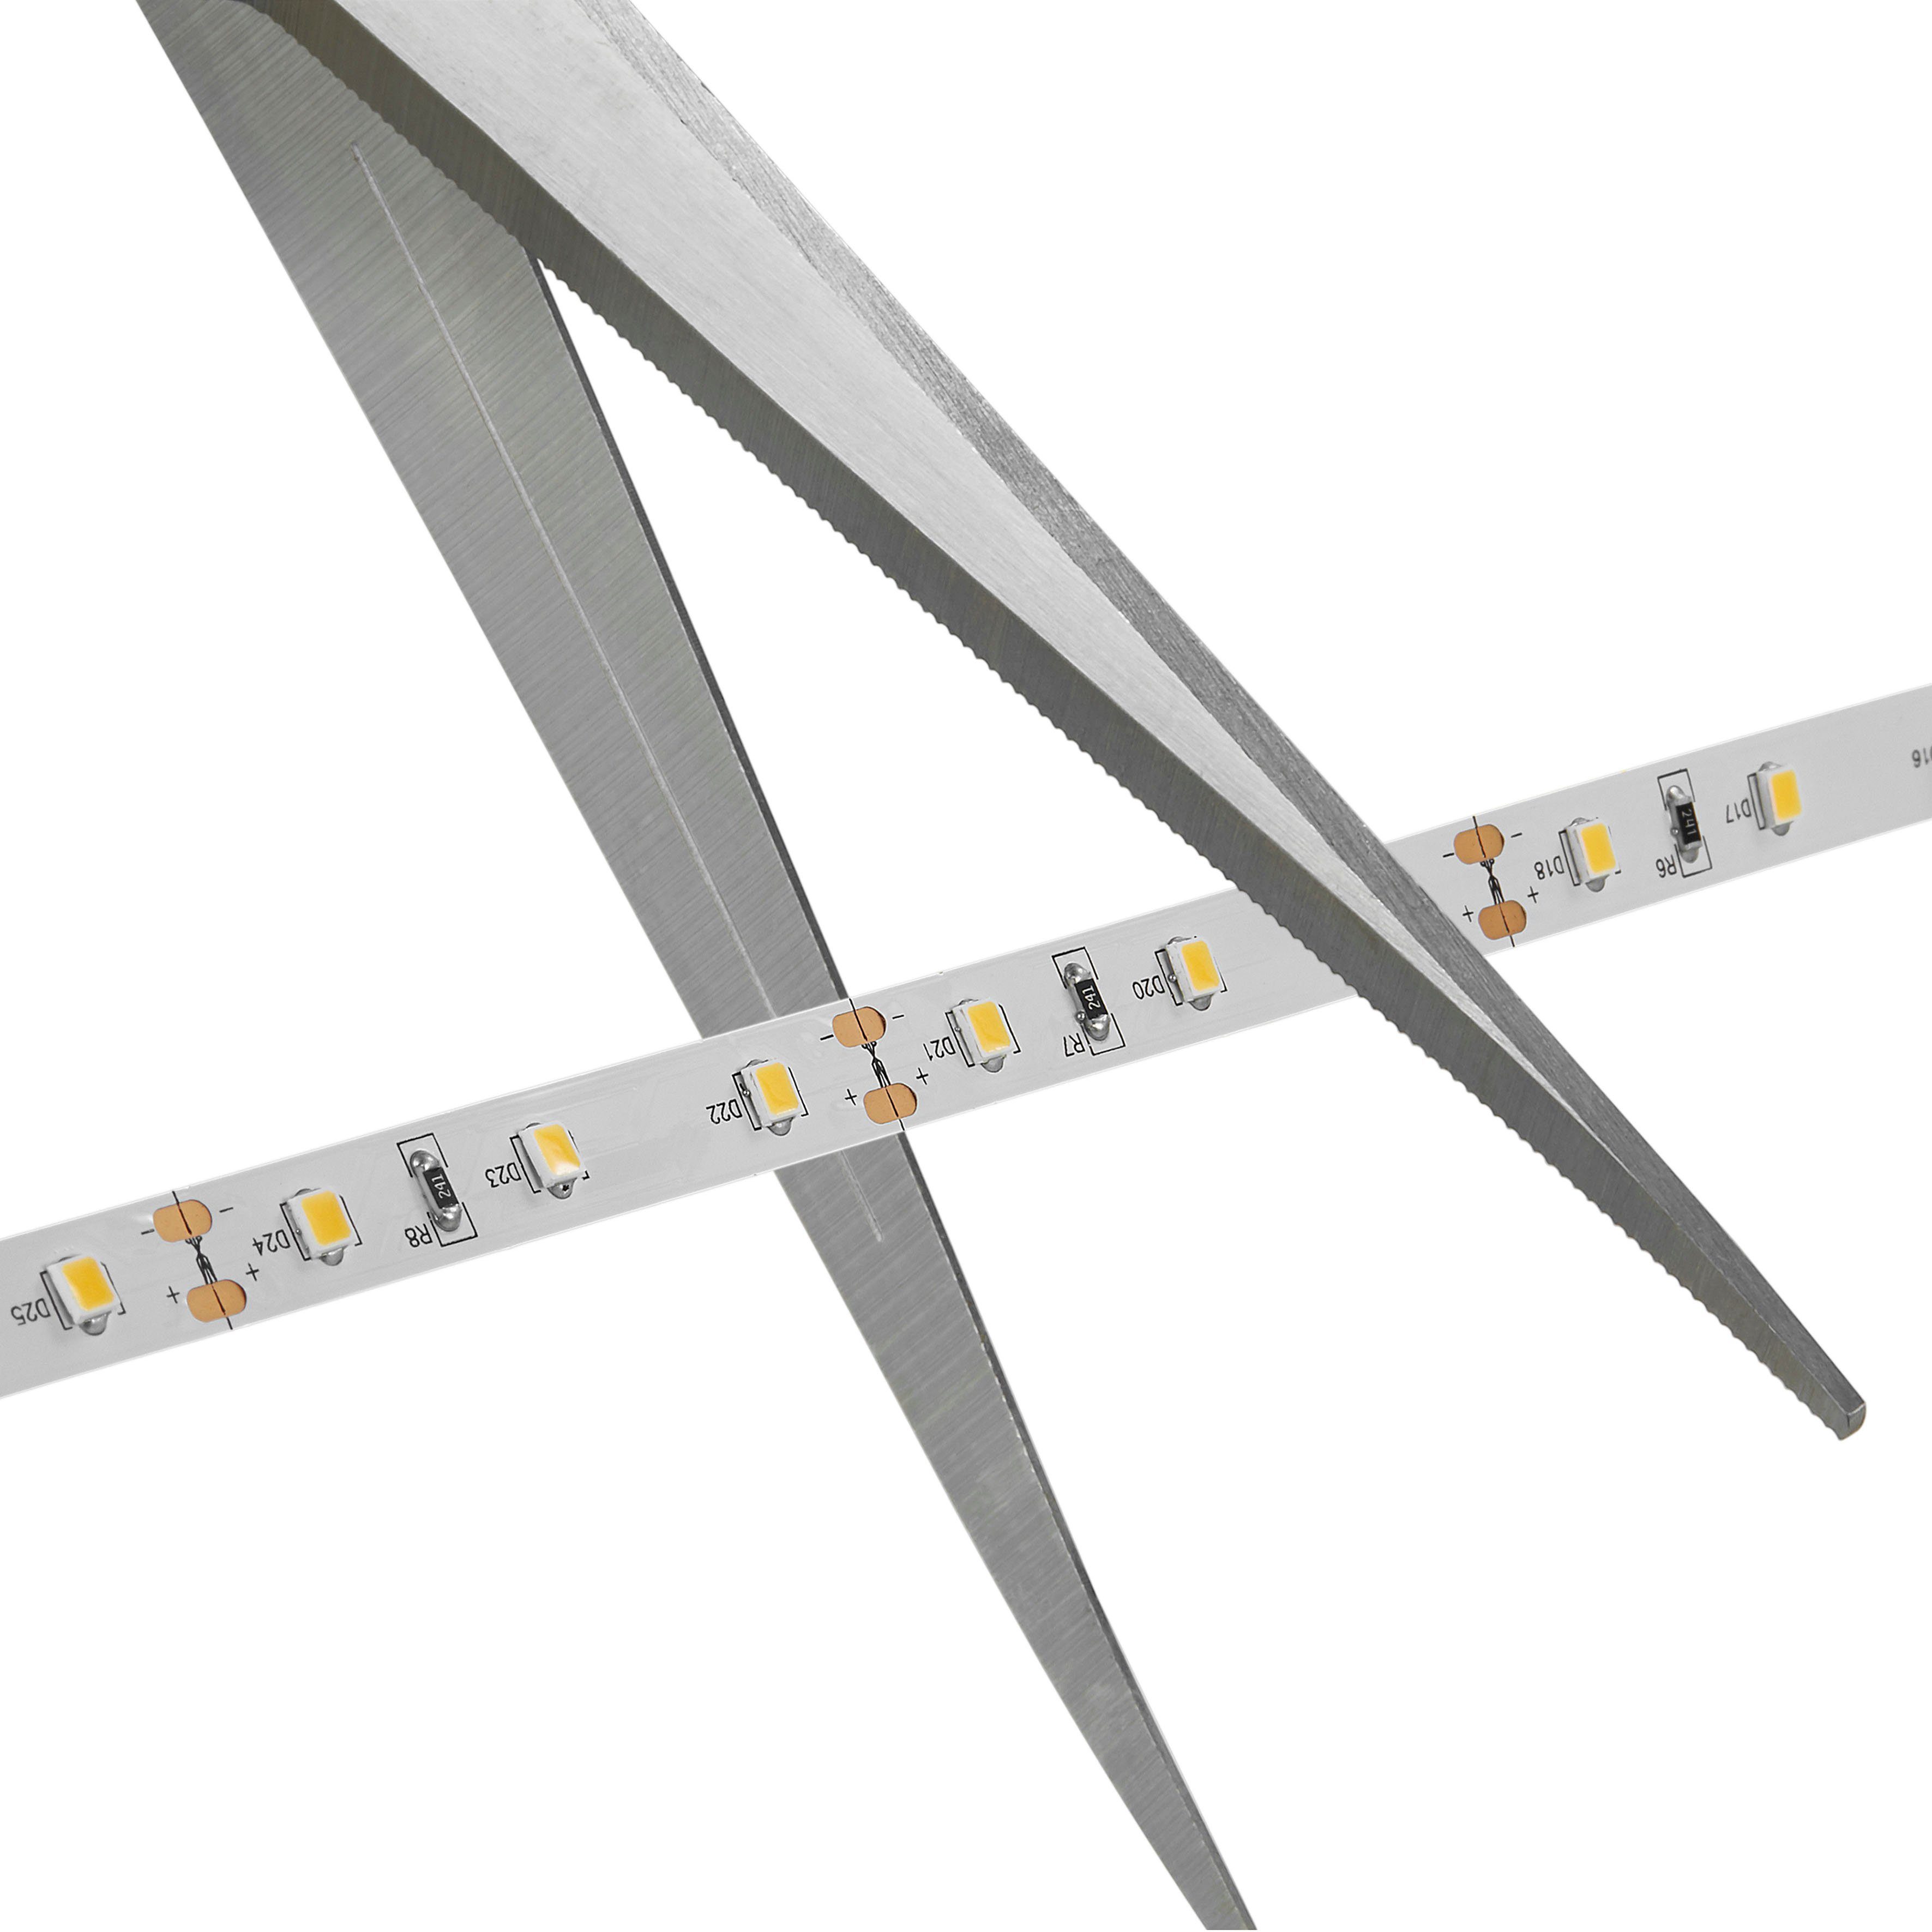 Nordlux LED Stripe Ledstrip, – wiederverwendbar anzubringen Klebeband auf Streifen, Einfach